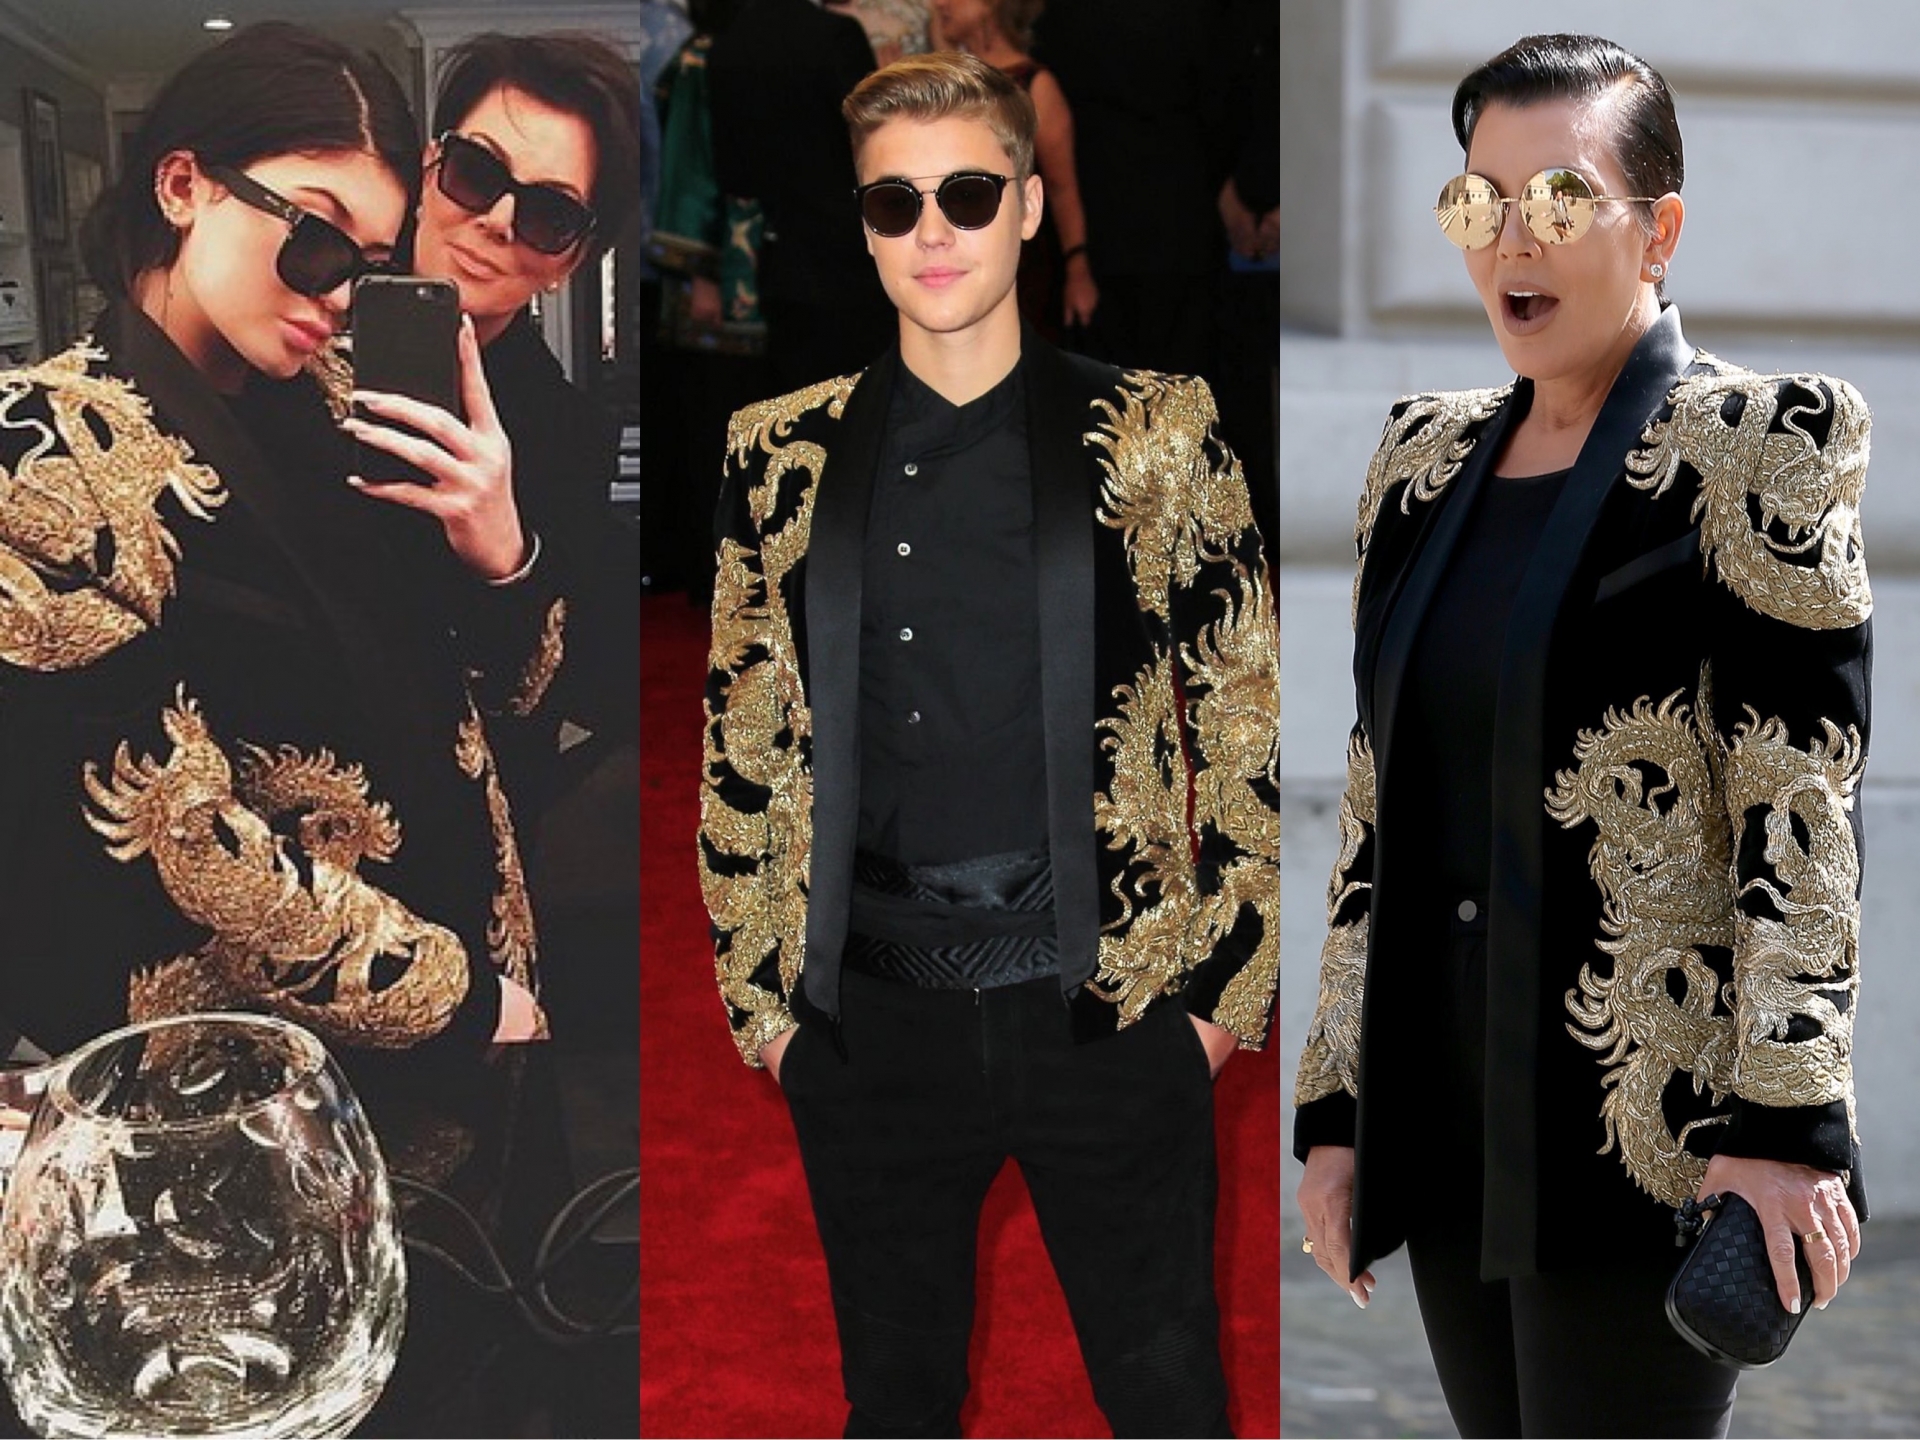 Một trong những màn 'đụng hàng' huyền thoại phải kể đến chiếc áo blazer của Balmain được 'lăng xê' bởi Justin Bieber và mẹ con Kris Jenner - Kylie Jenner. Tuy nhiên, bà mẹ nổi tiếng vẫn 'lấn át' lớp trẻ nhờ thần thái cực cool ngầu của mình.